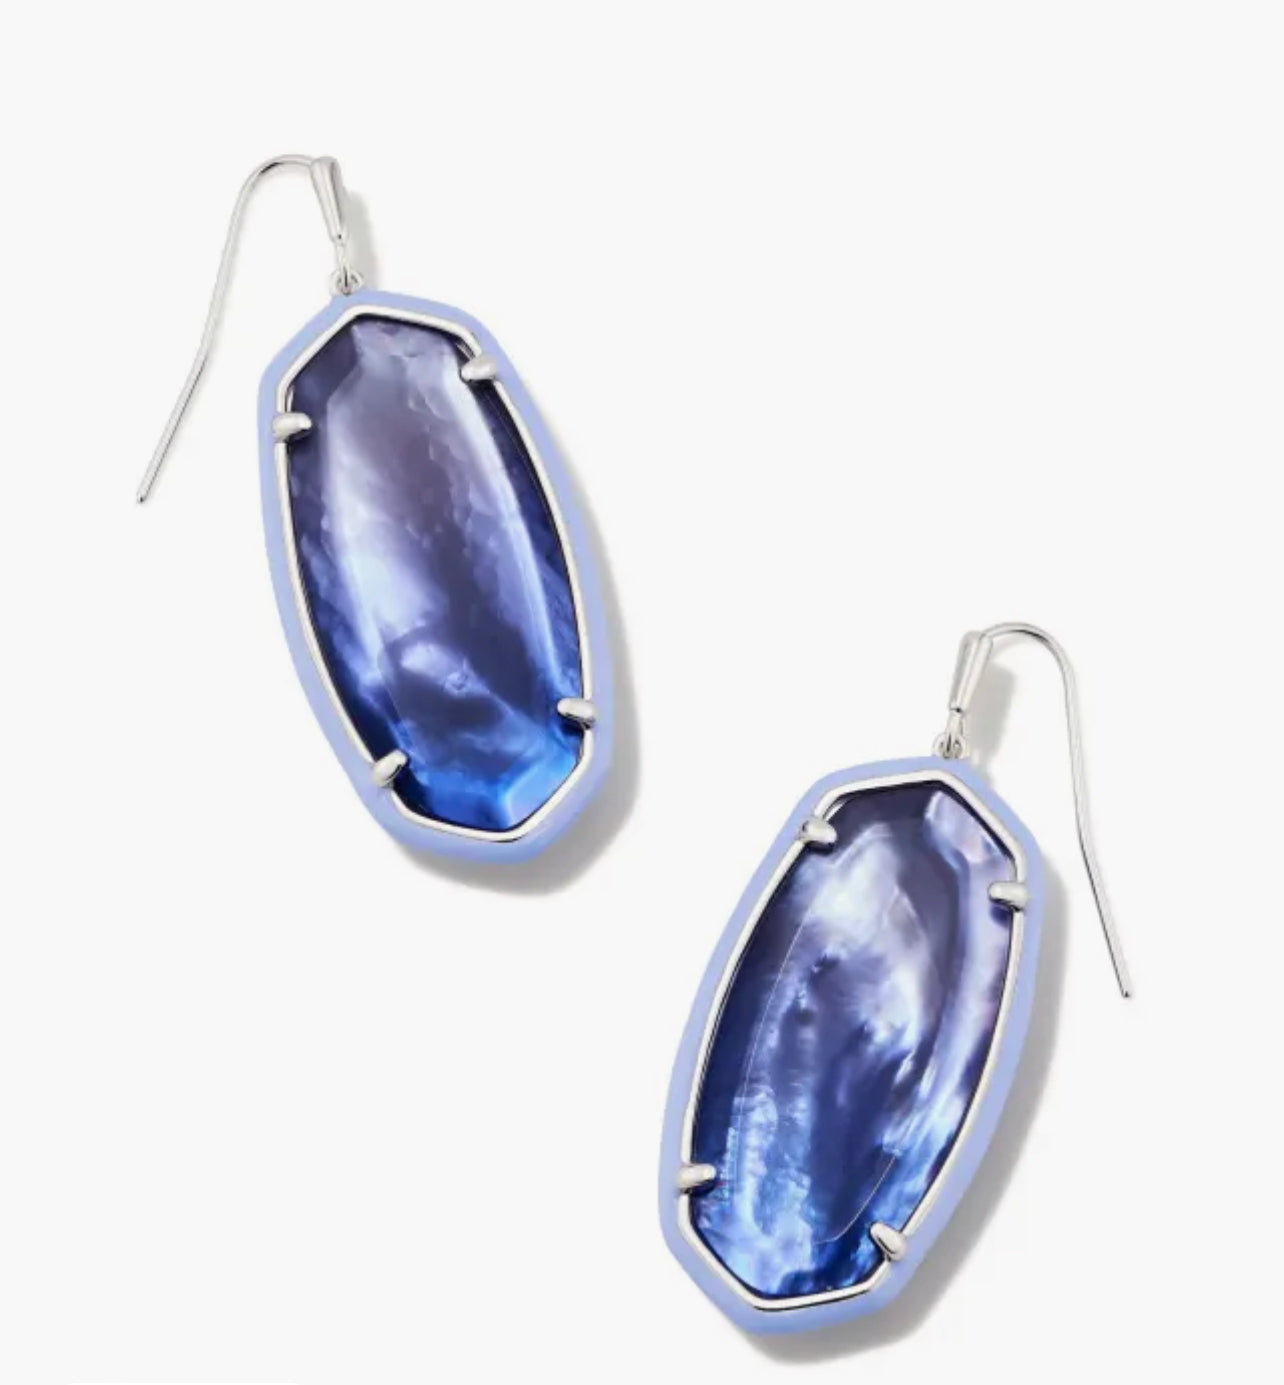 Kendra Scott-Elle Silver Enamel Framed Drop Earrings in Dark Lavender Ombre  9608853175